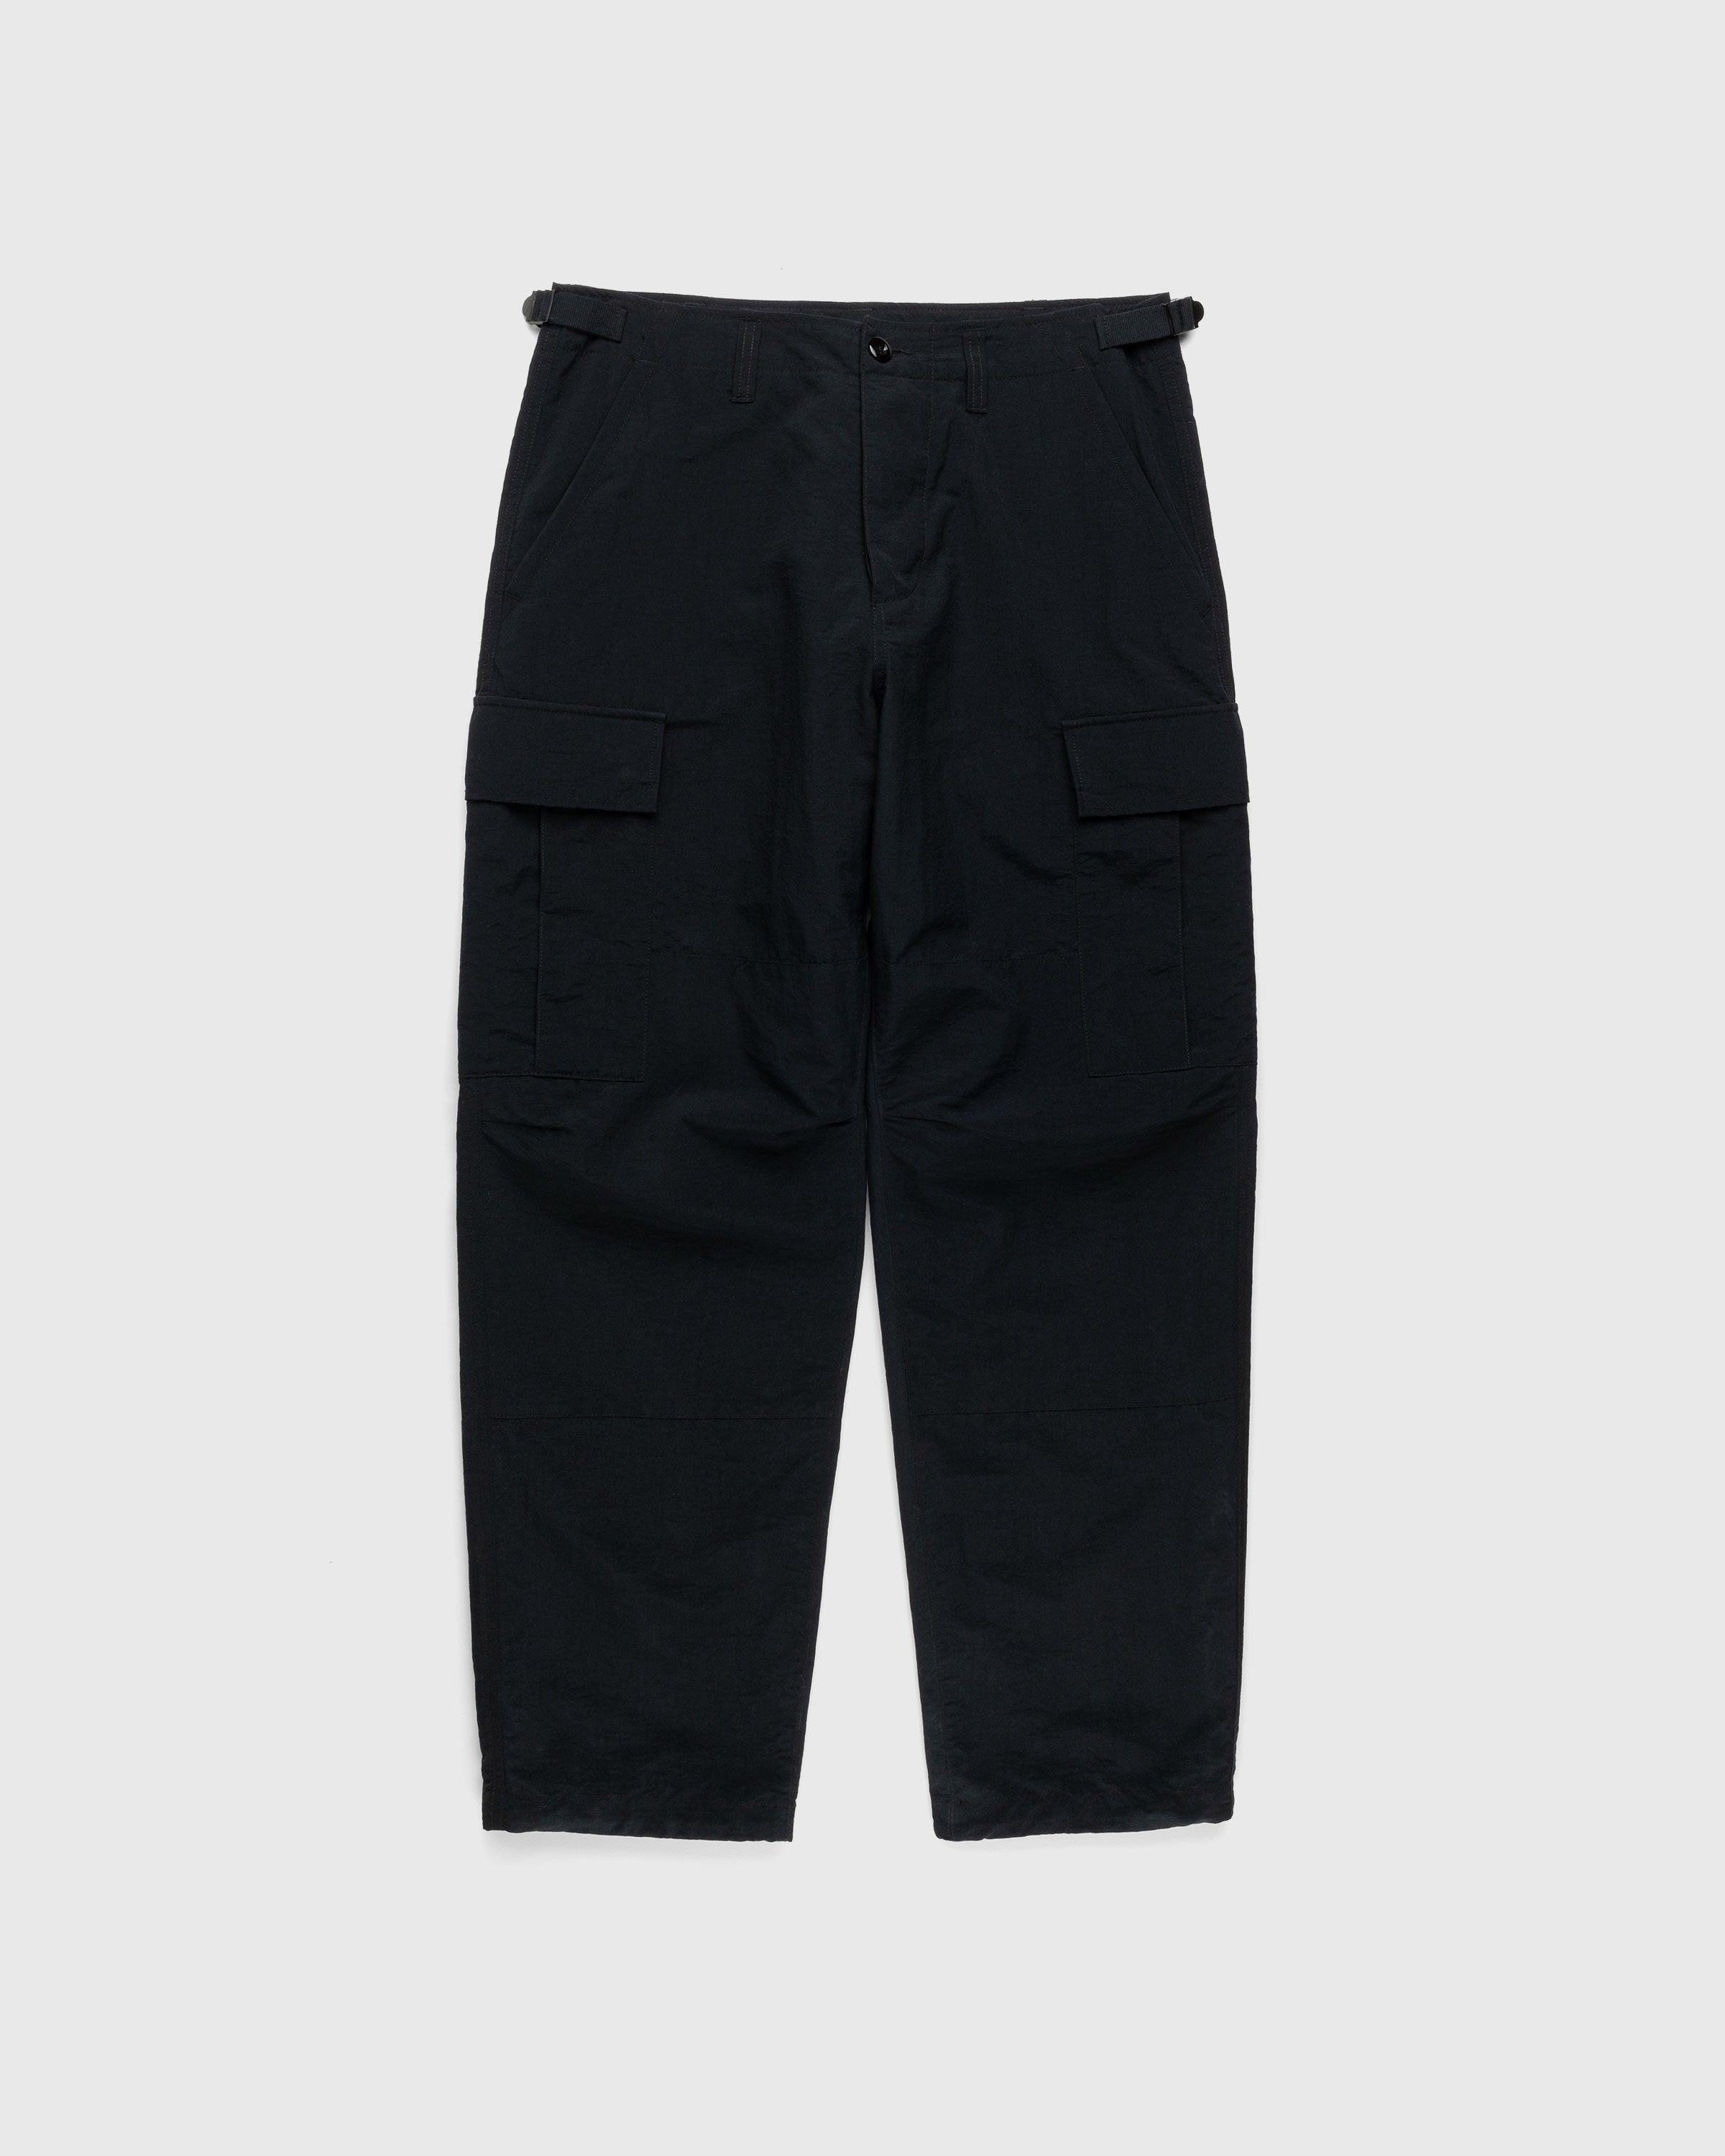 Highsnobiety - Nylon Cargo Pants Black - Clothing - Black - Image 1